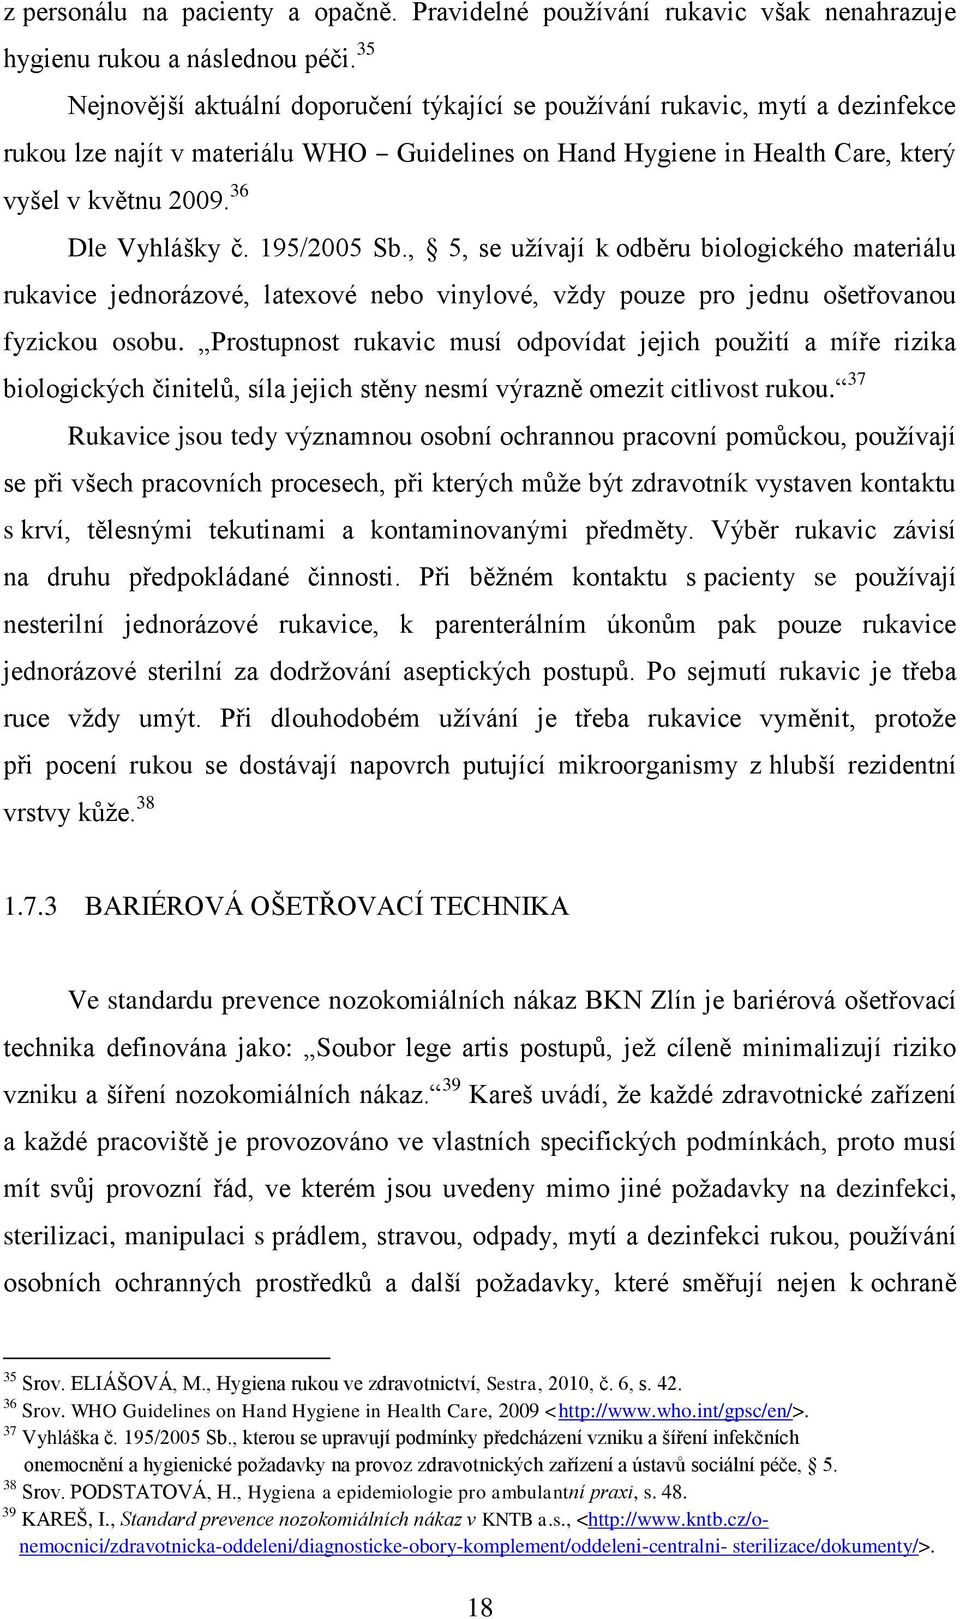 36 Dle Vyhlášky č. 195/2005 Sb., 5, se uţívají k odběru biologického materiálu rukavice jednorázové, latexové nebo vinylové, vţdy pouze pro jednu ošetřovanou fyzickou osobu.